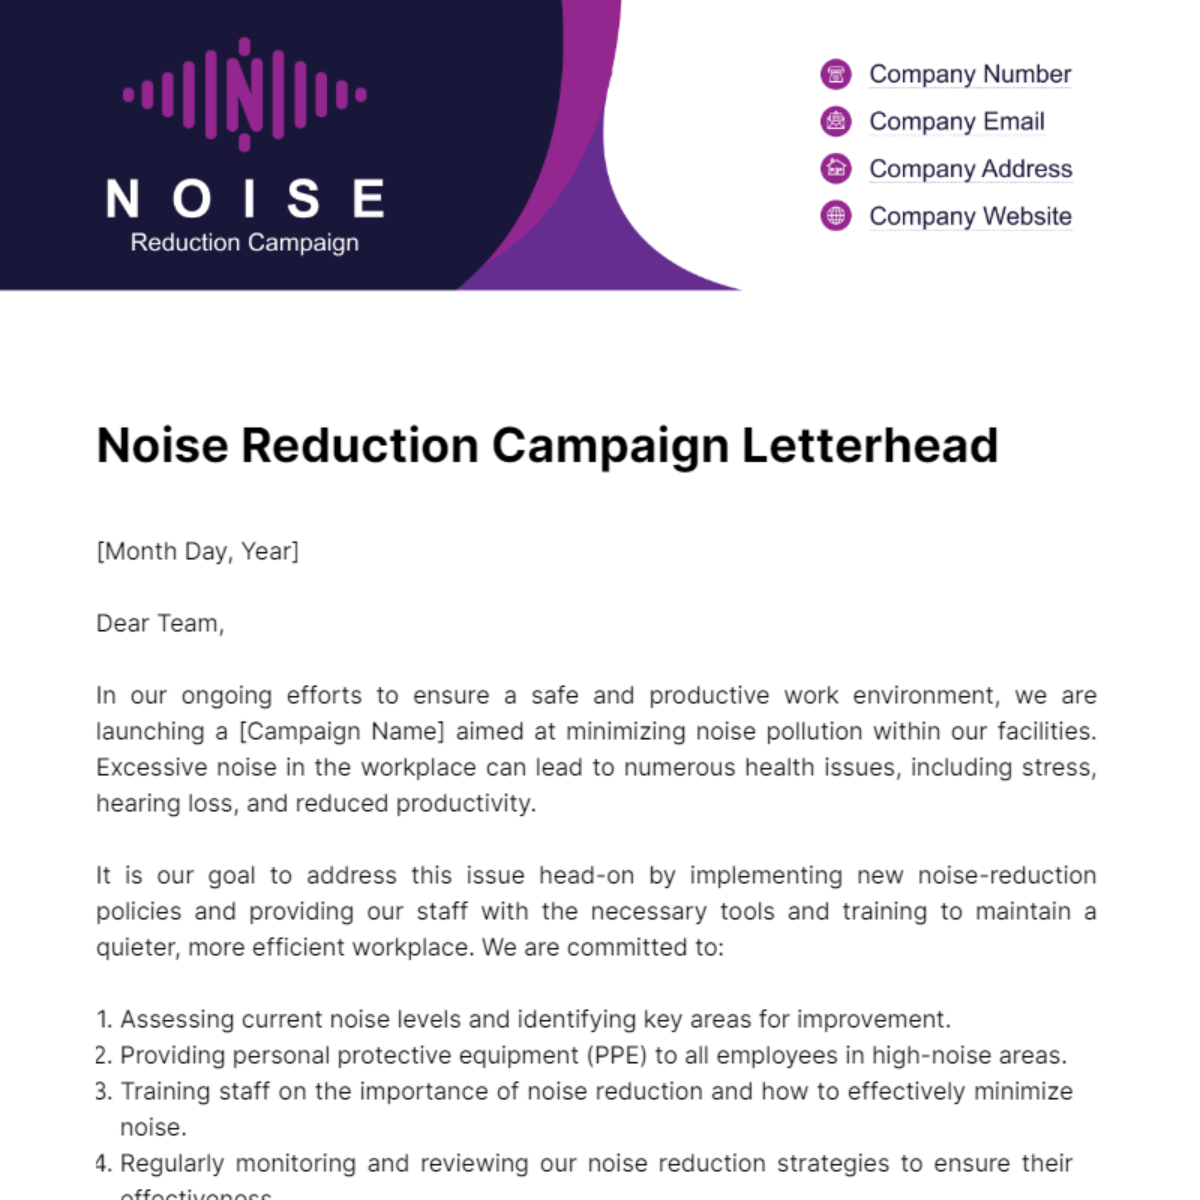 Noise Reduction Campaign Letterhead Template